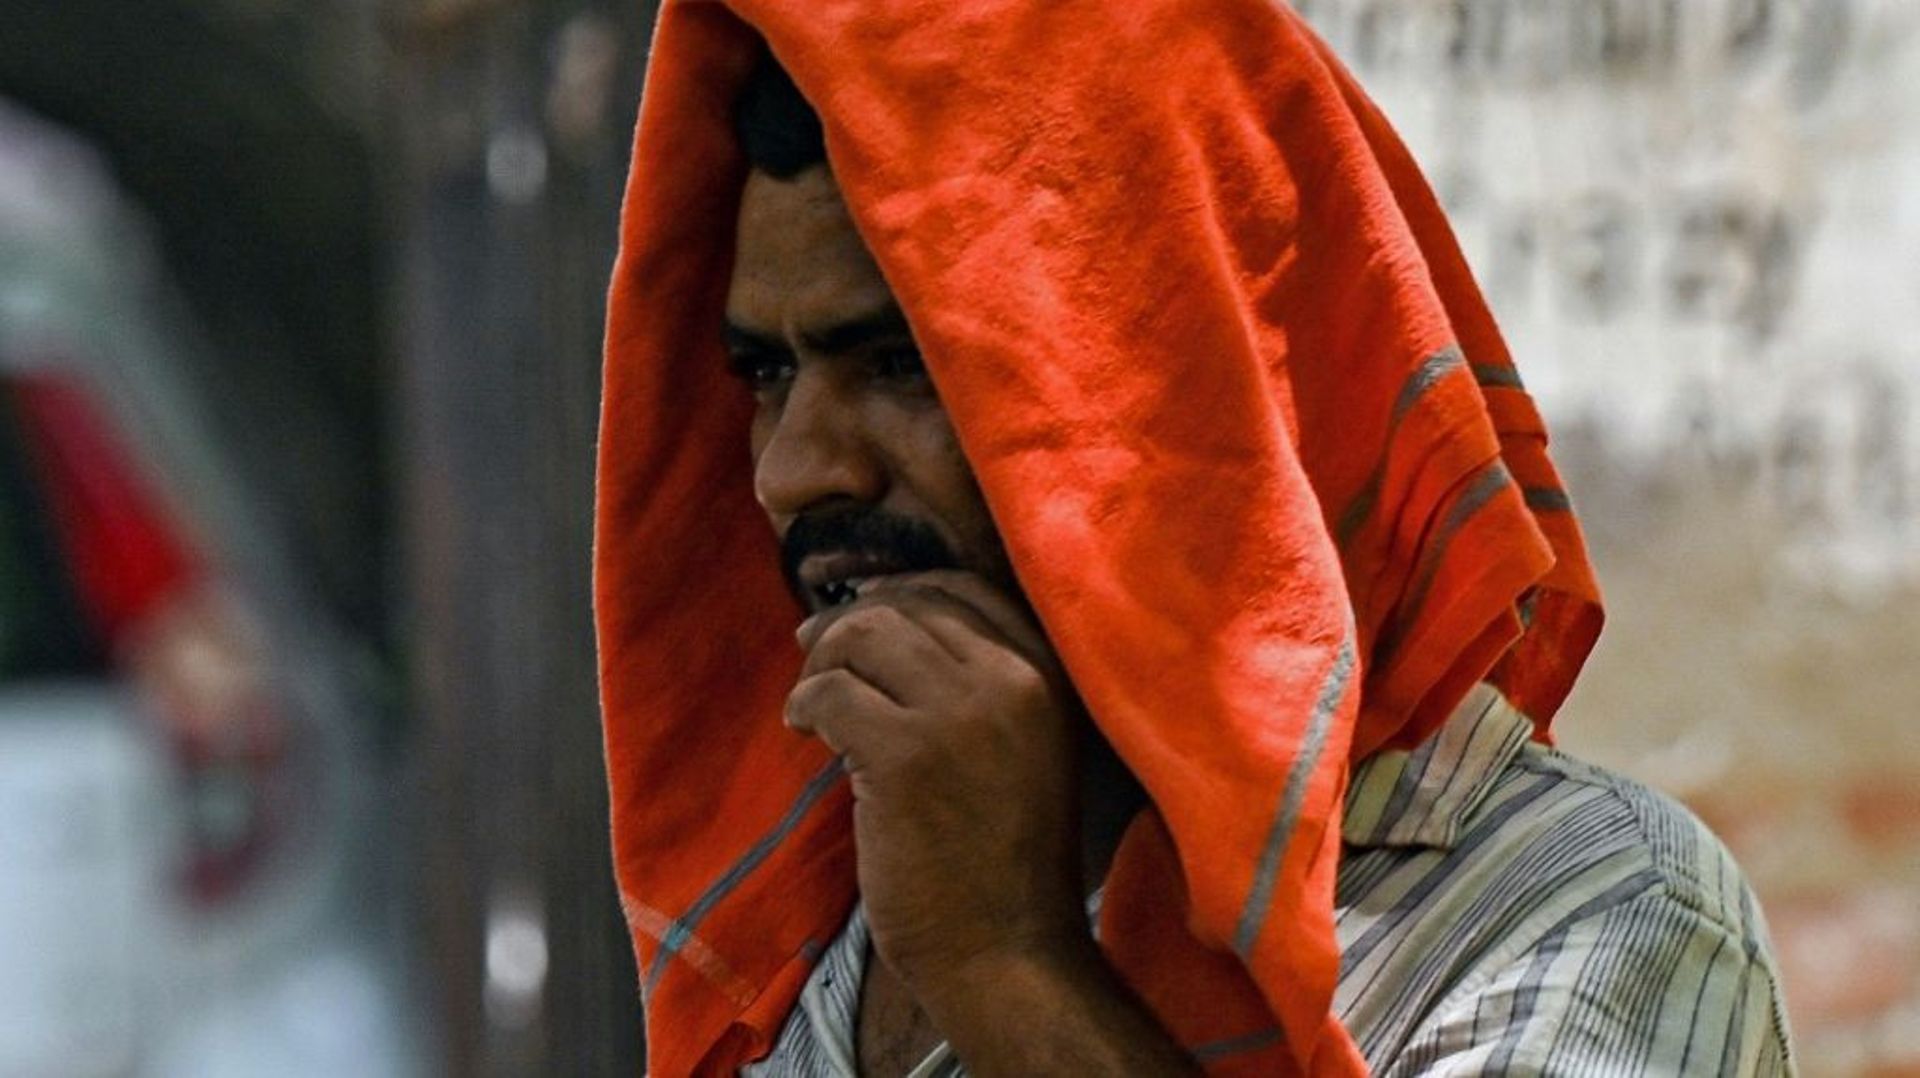 Un homme couvre sa tête d’un tissu pour se protéger de la chaleur lors d’une chaude journée d’été, le 28 avril 2022 à New Delhi, en Inde.